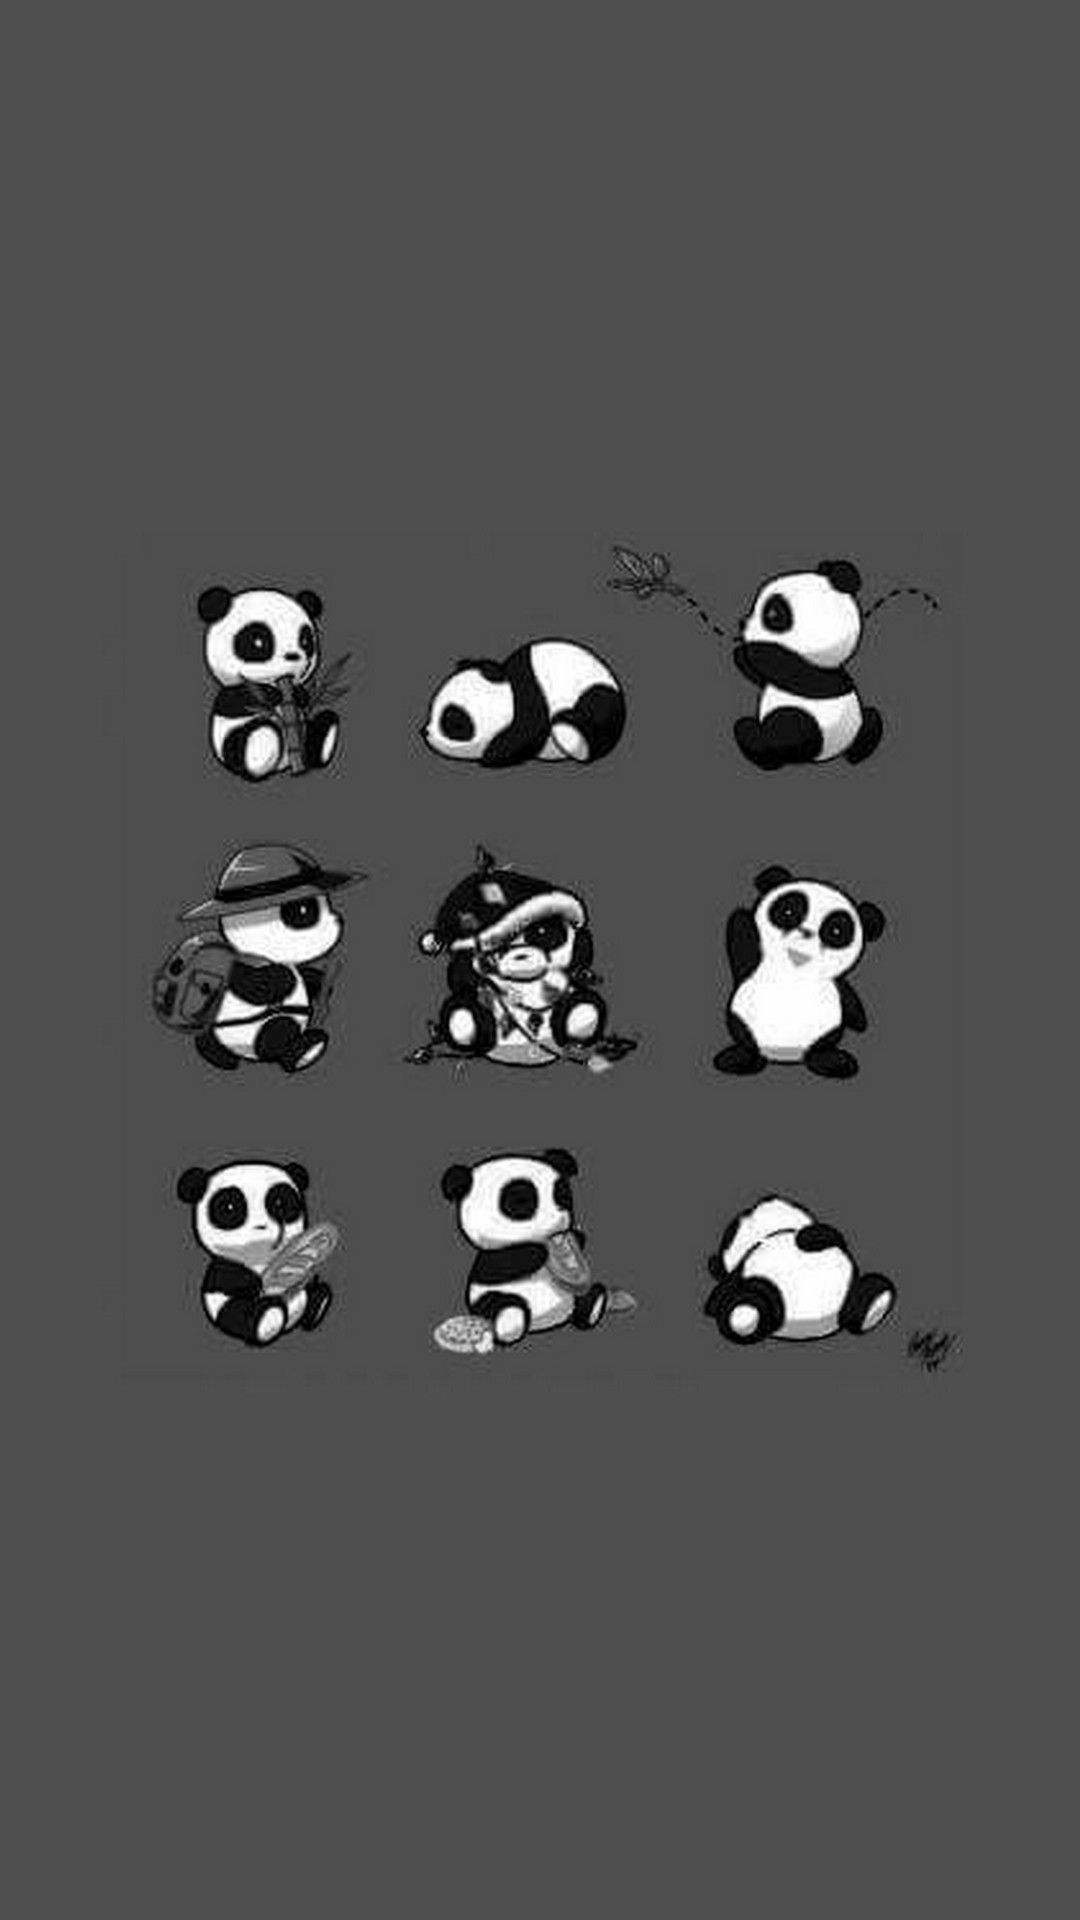 Baby Panda HD Wallpaper For Mobile. Best HD Wallpaper. Panda wallpaper iphone, Panda wallpaper, Baby panda